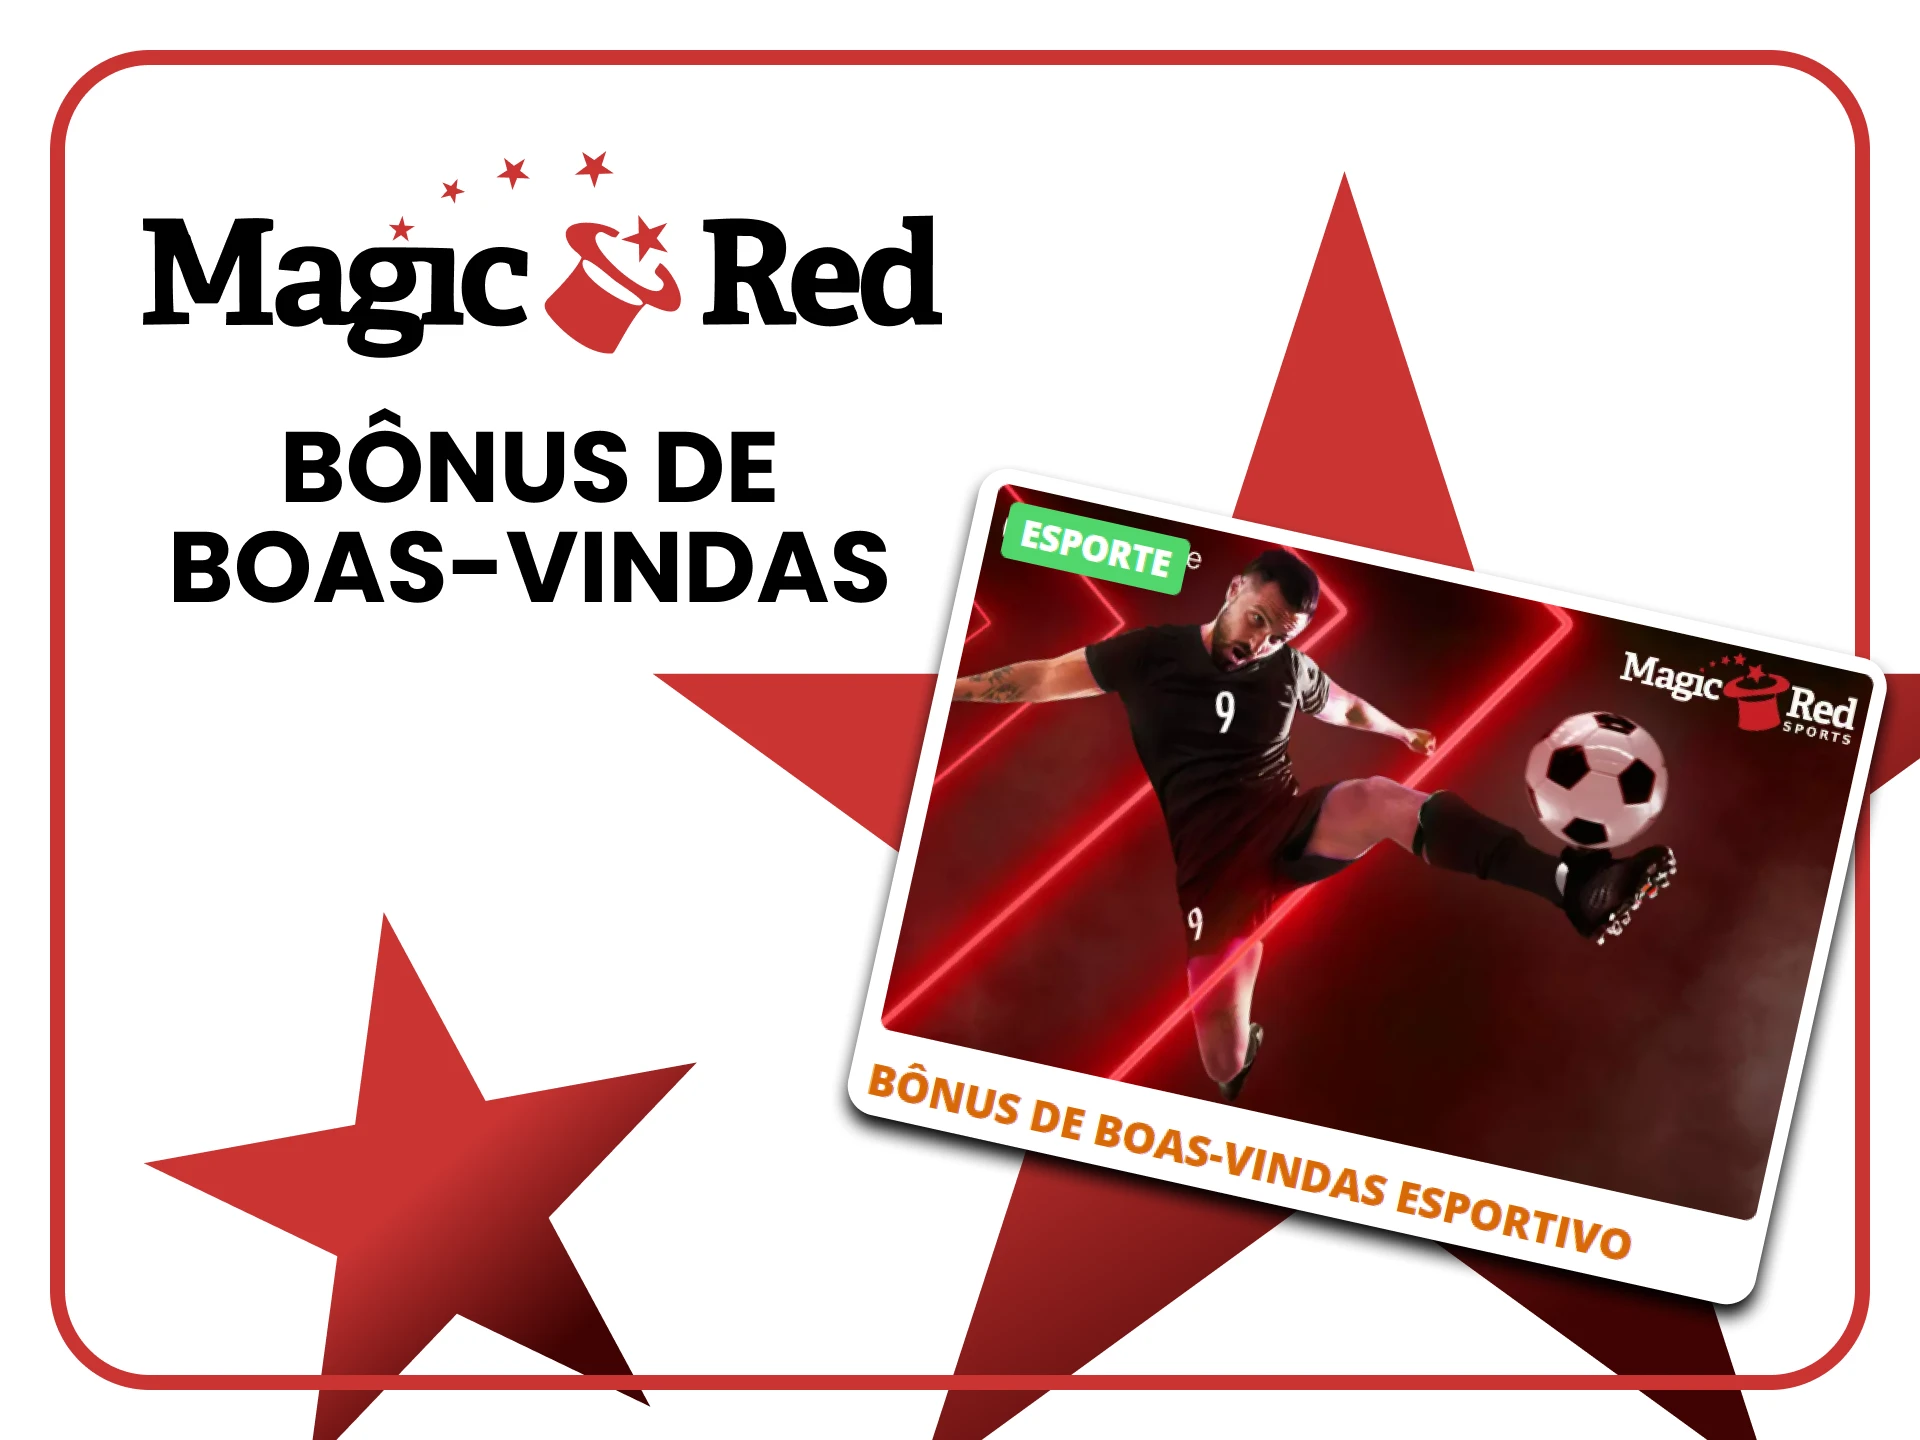 Ao apostar no Vôlei você recebe um bônus do Magic Red.